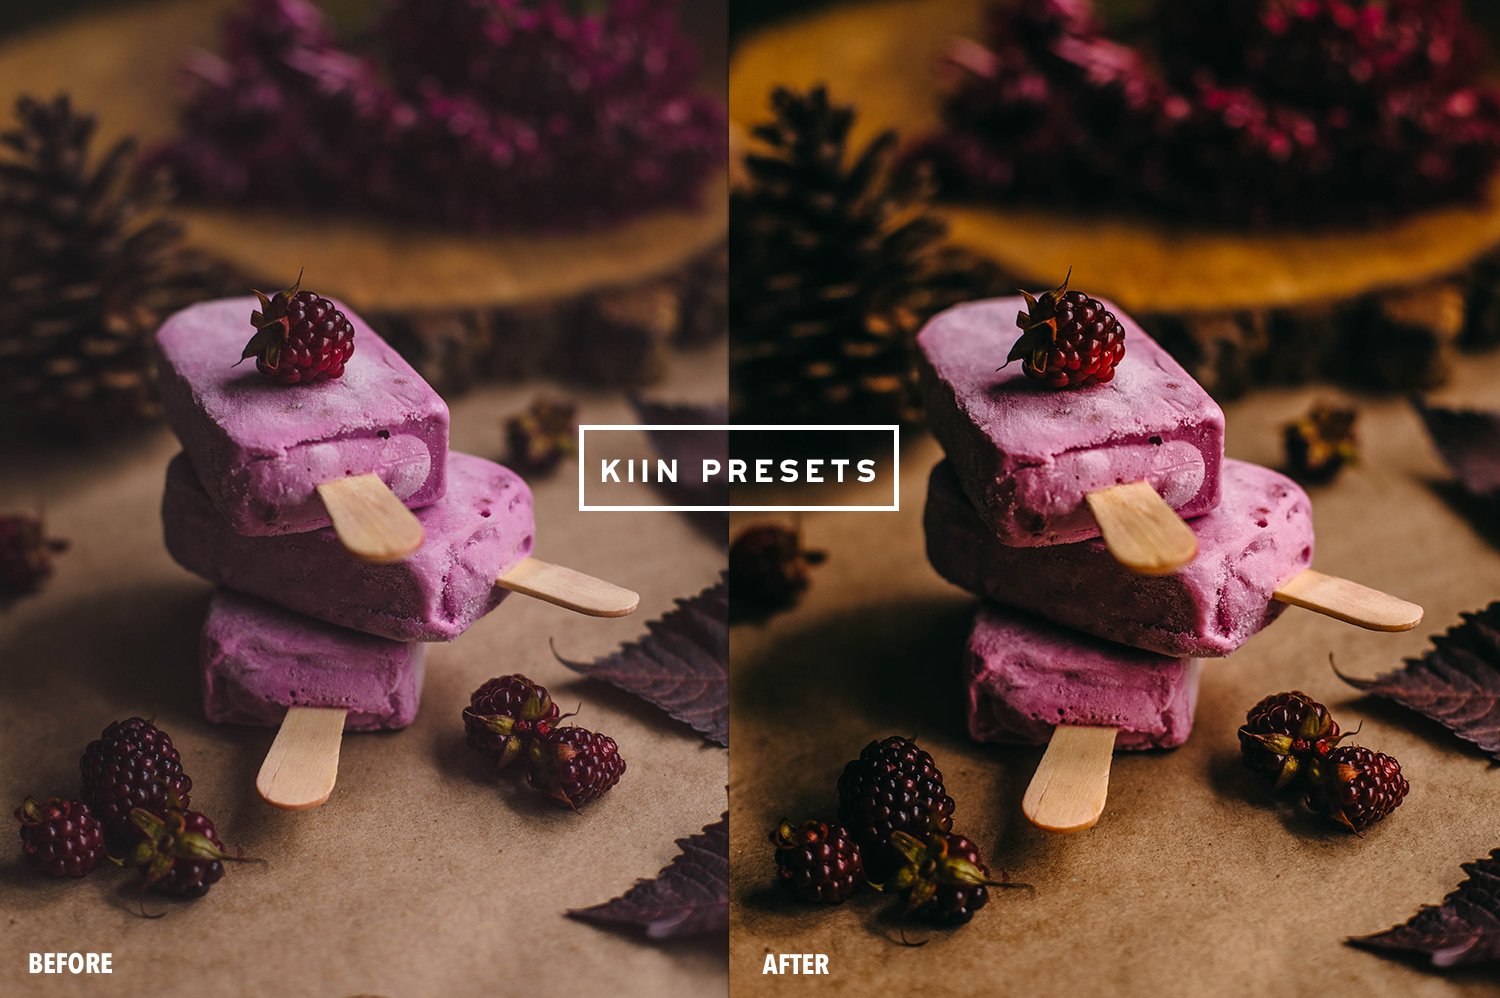 07kiin presetslightroom presetsmobile presets food presets tasty presets food photography preset food filter presets airy presets bright presets. 881